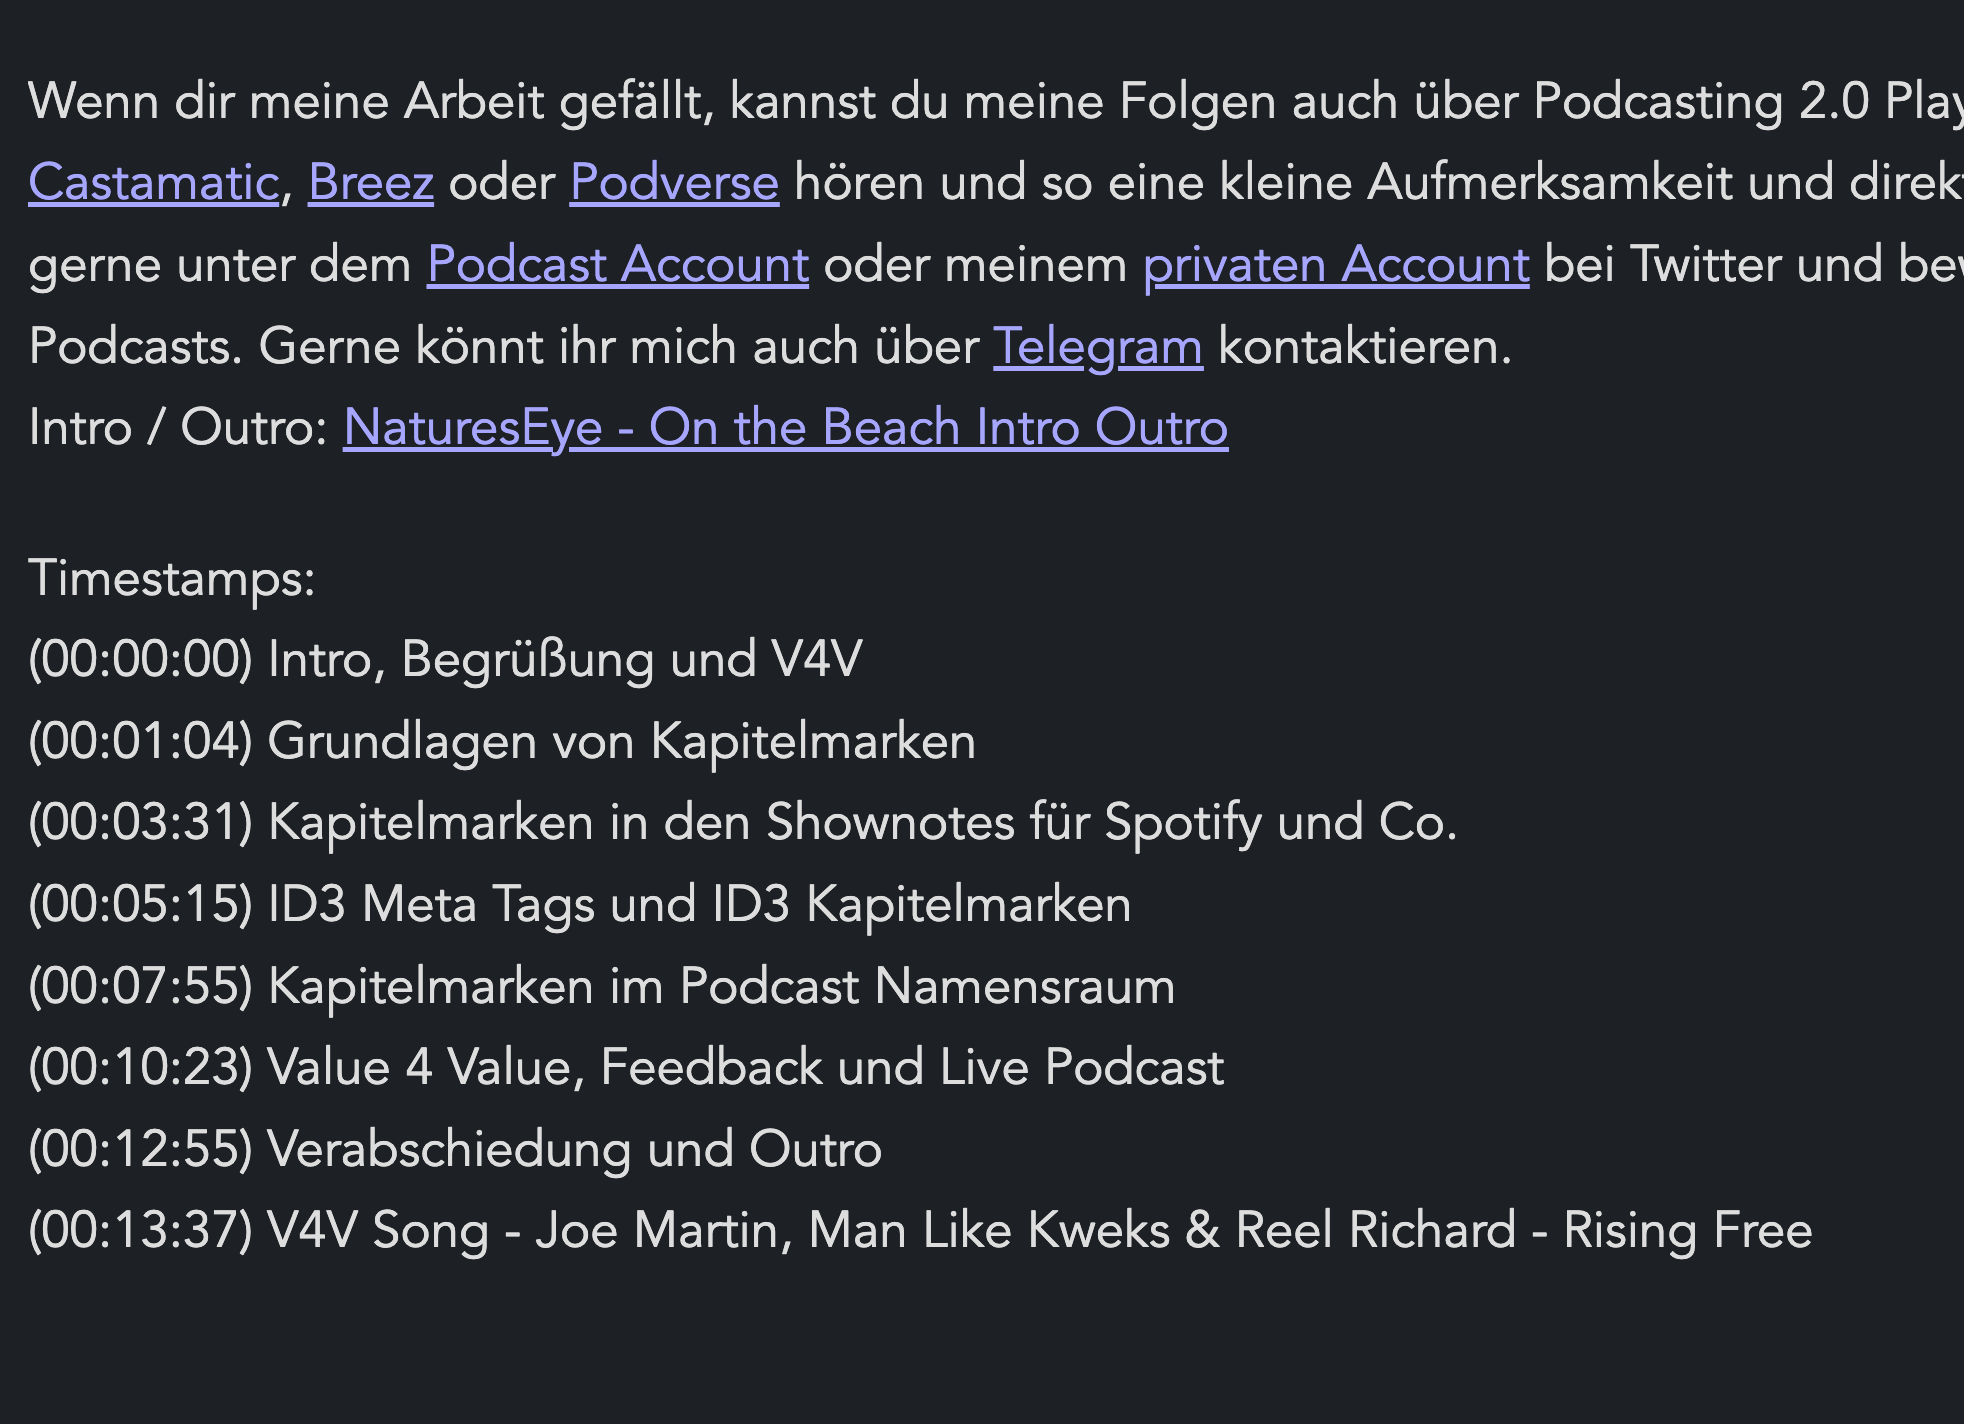 Kapitelmarken in den Shownotes für Spotify und Co.